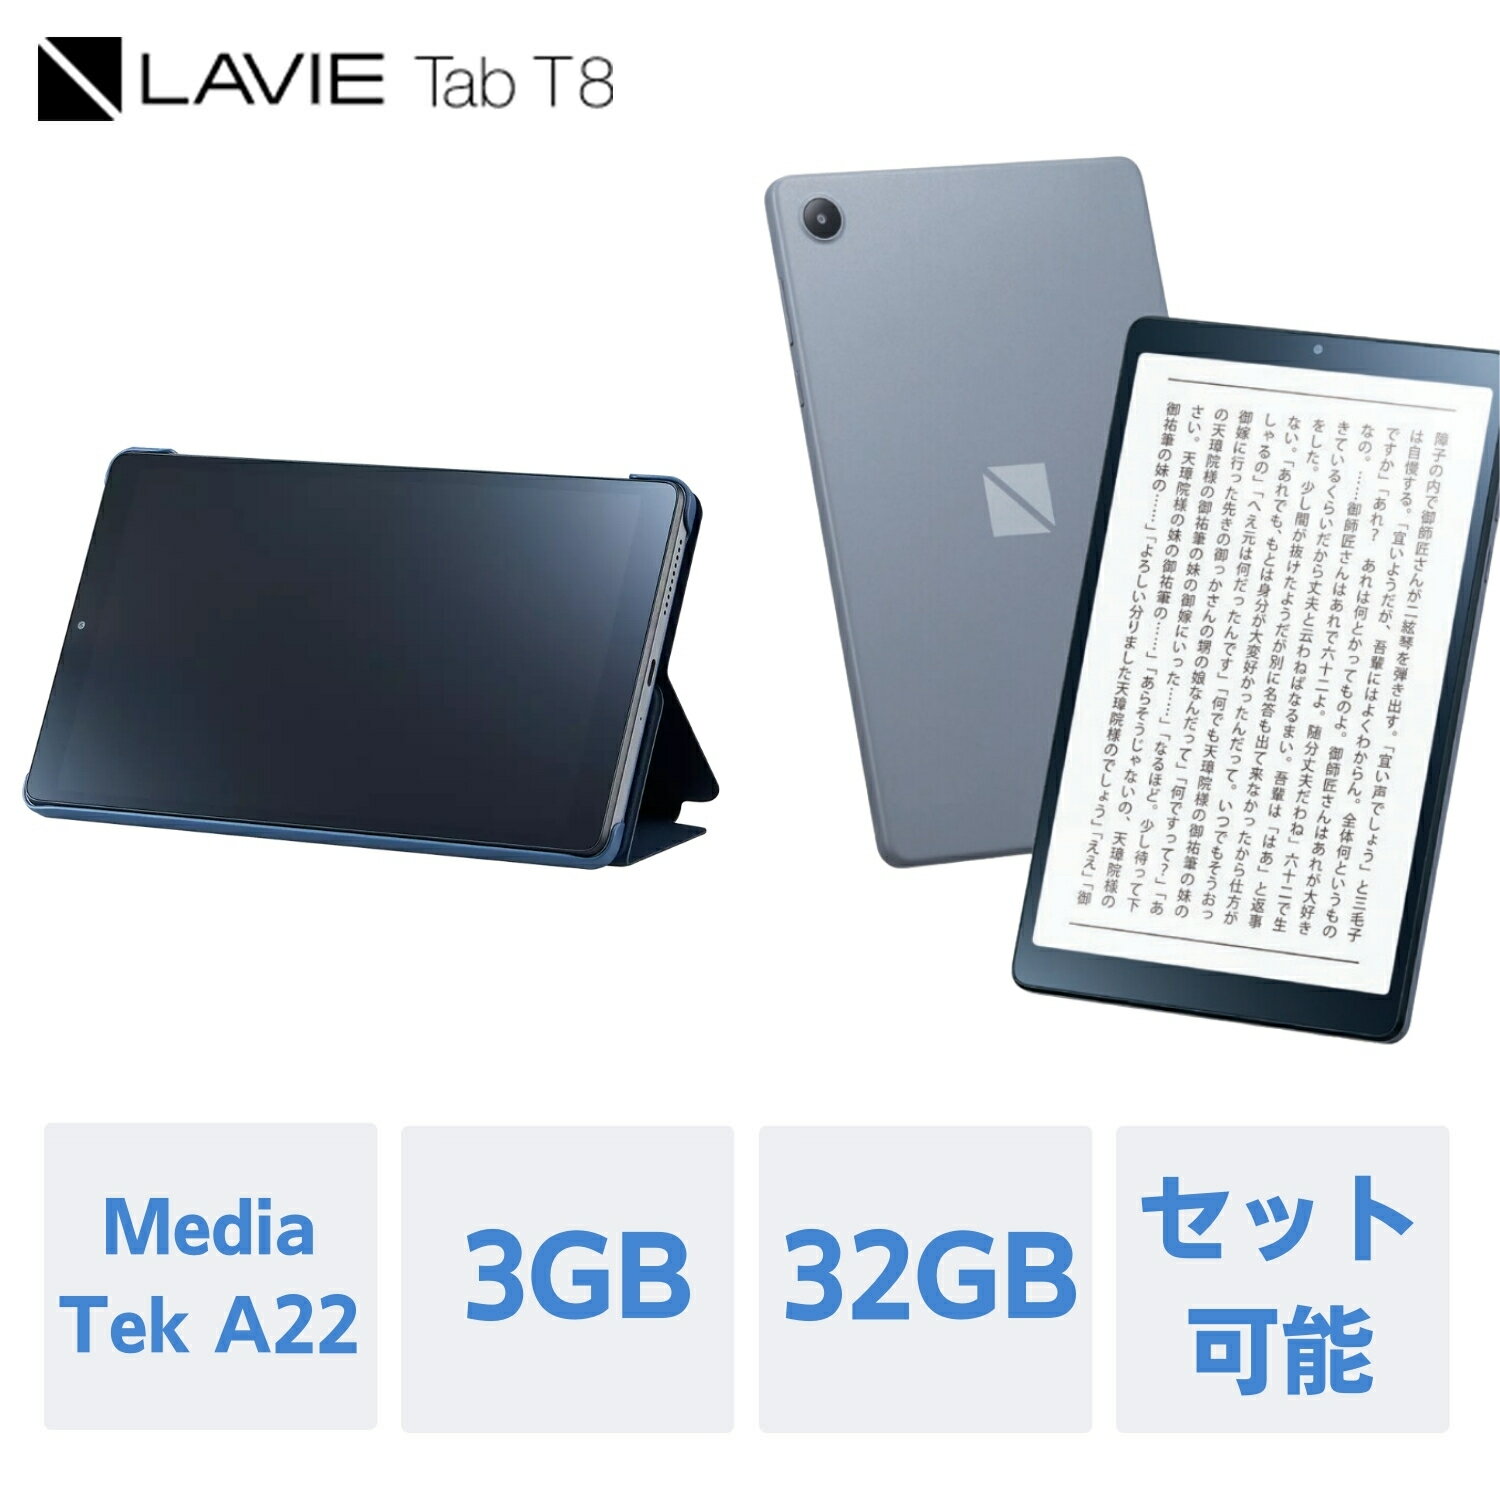  NEC LAVIE 日本 メーカー タブレット Android 12 wi-fiモデル MediaTek A22 8インチ 3GB 32GB PC-TAB08H04 カバーセット